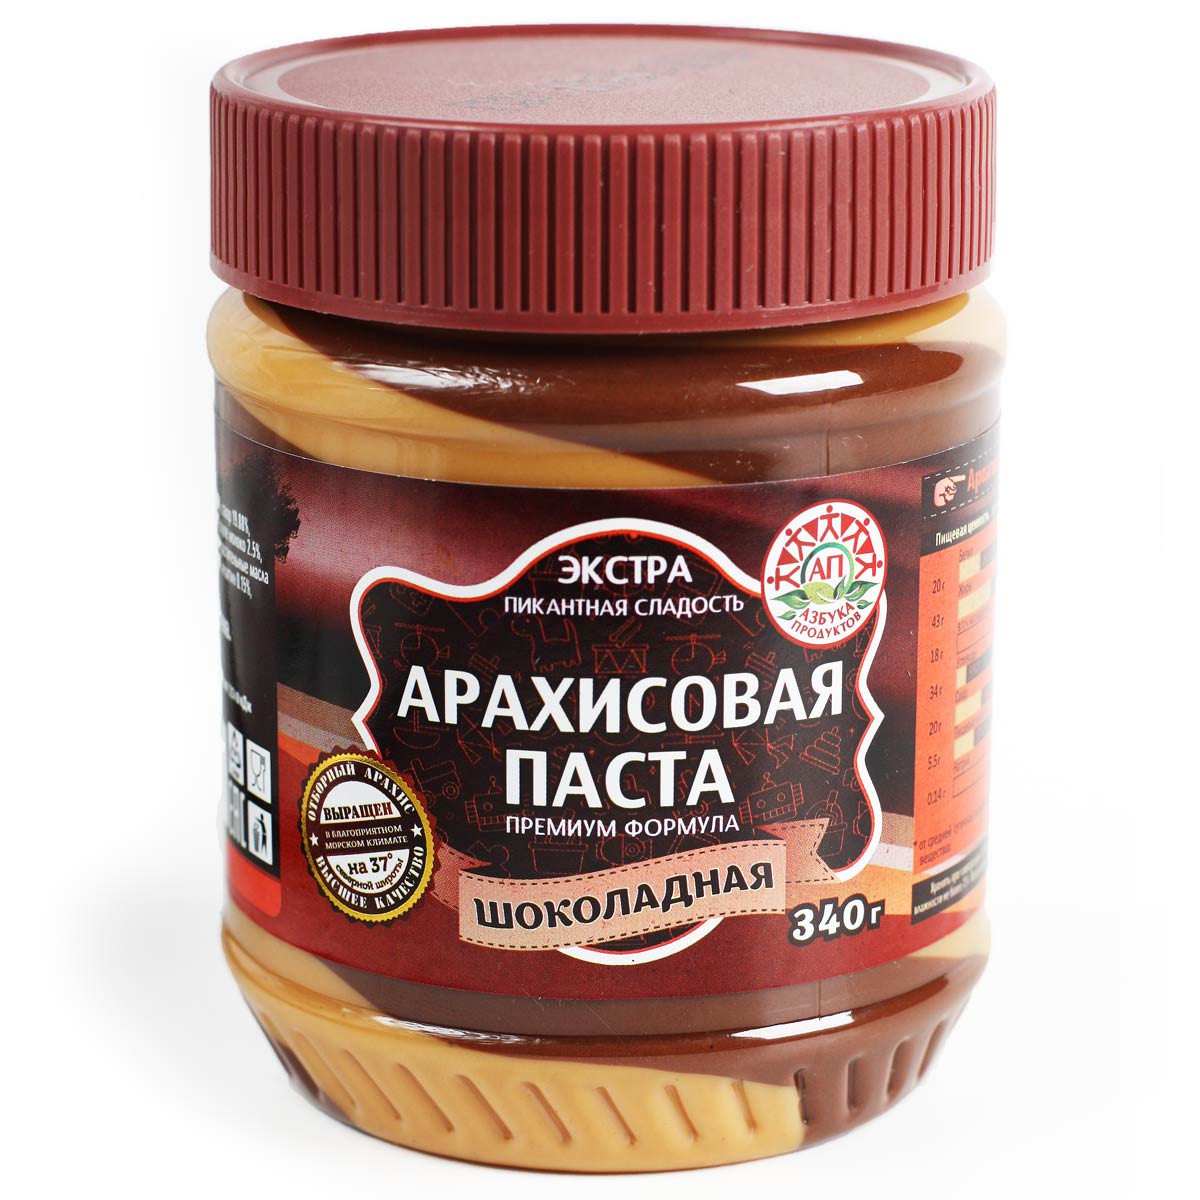 Арахисовая паста Шоколадная Азбука Продуктов 340г